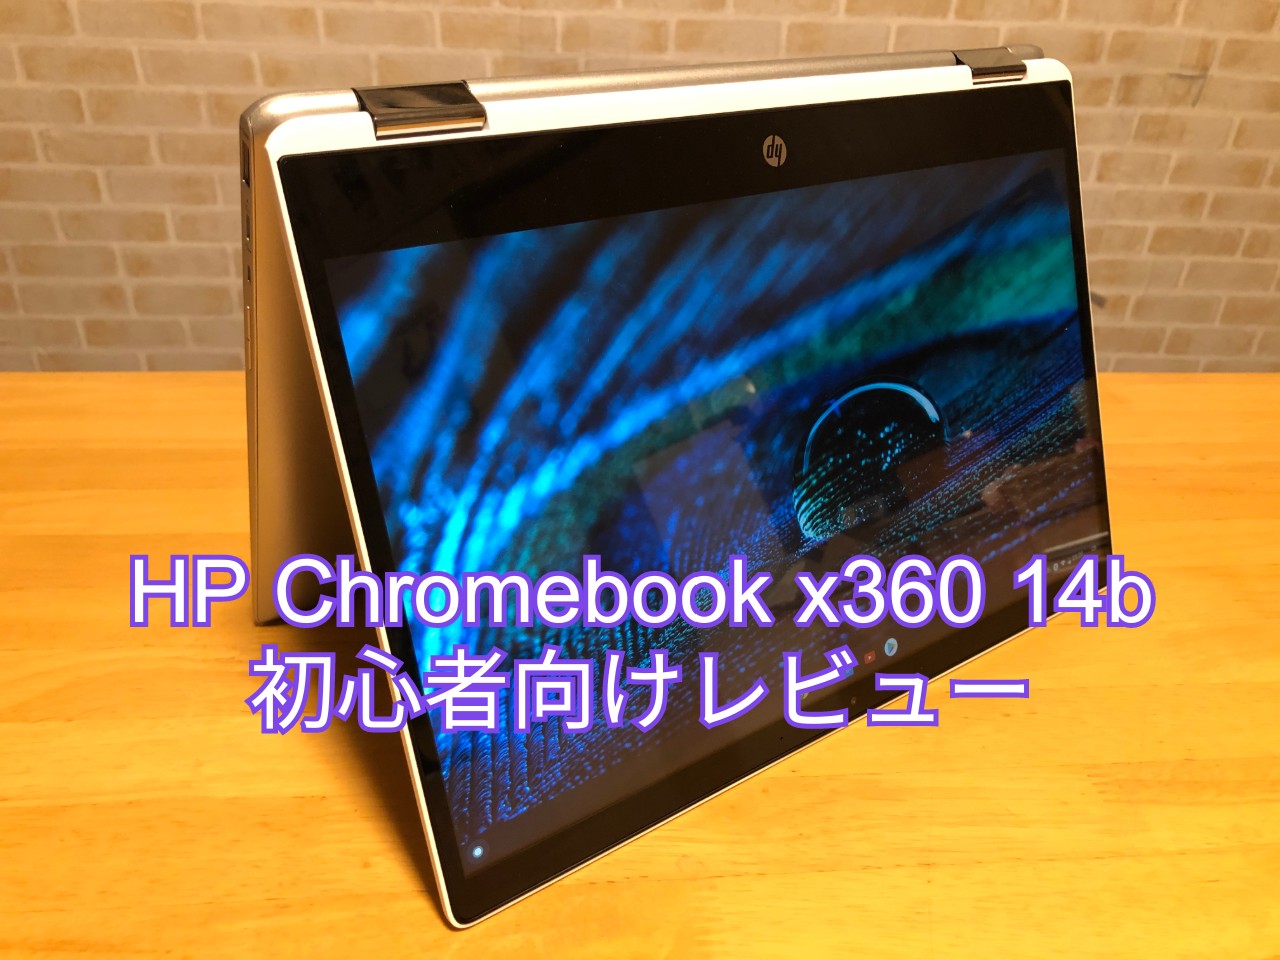 使えない Hp Chromebook X360 14b初心者向けレビュー タブレット パソコンとの違いは何 Shomey